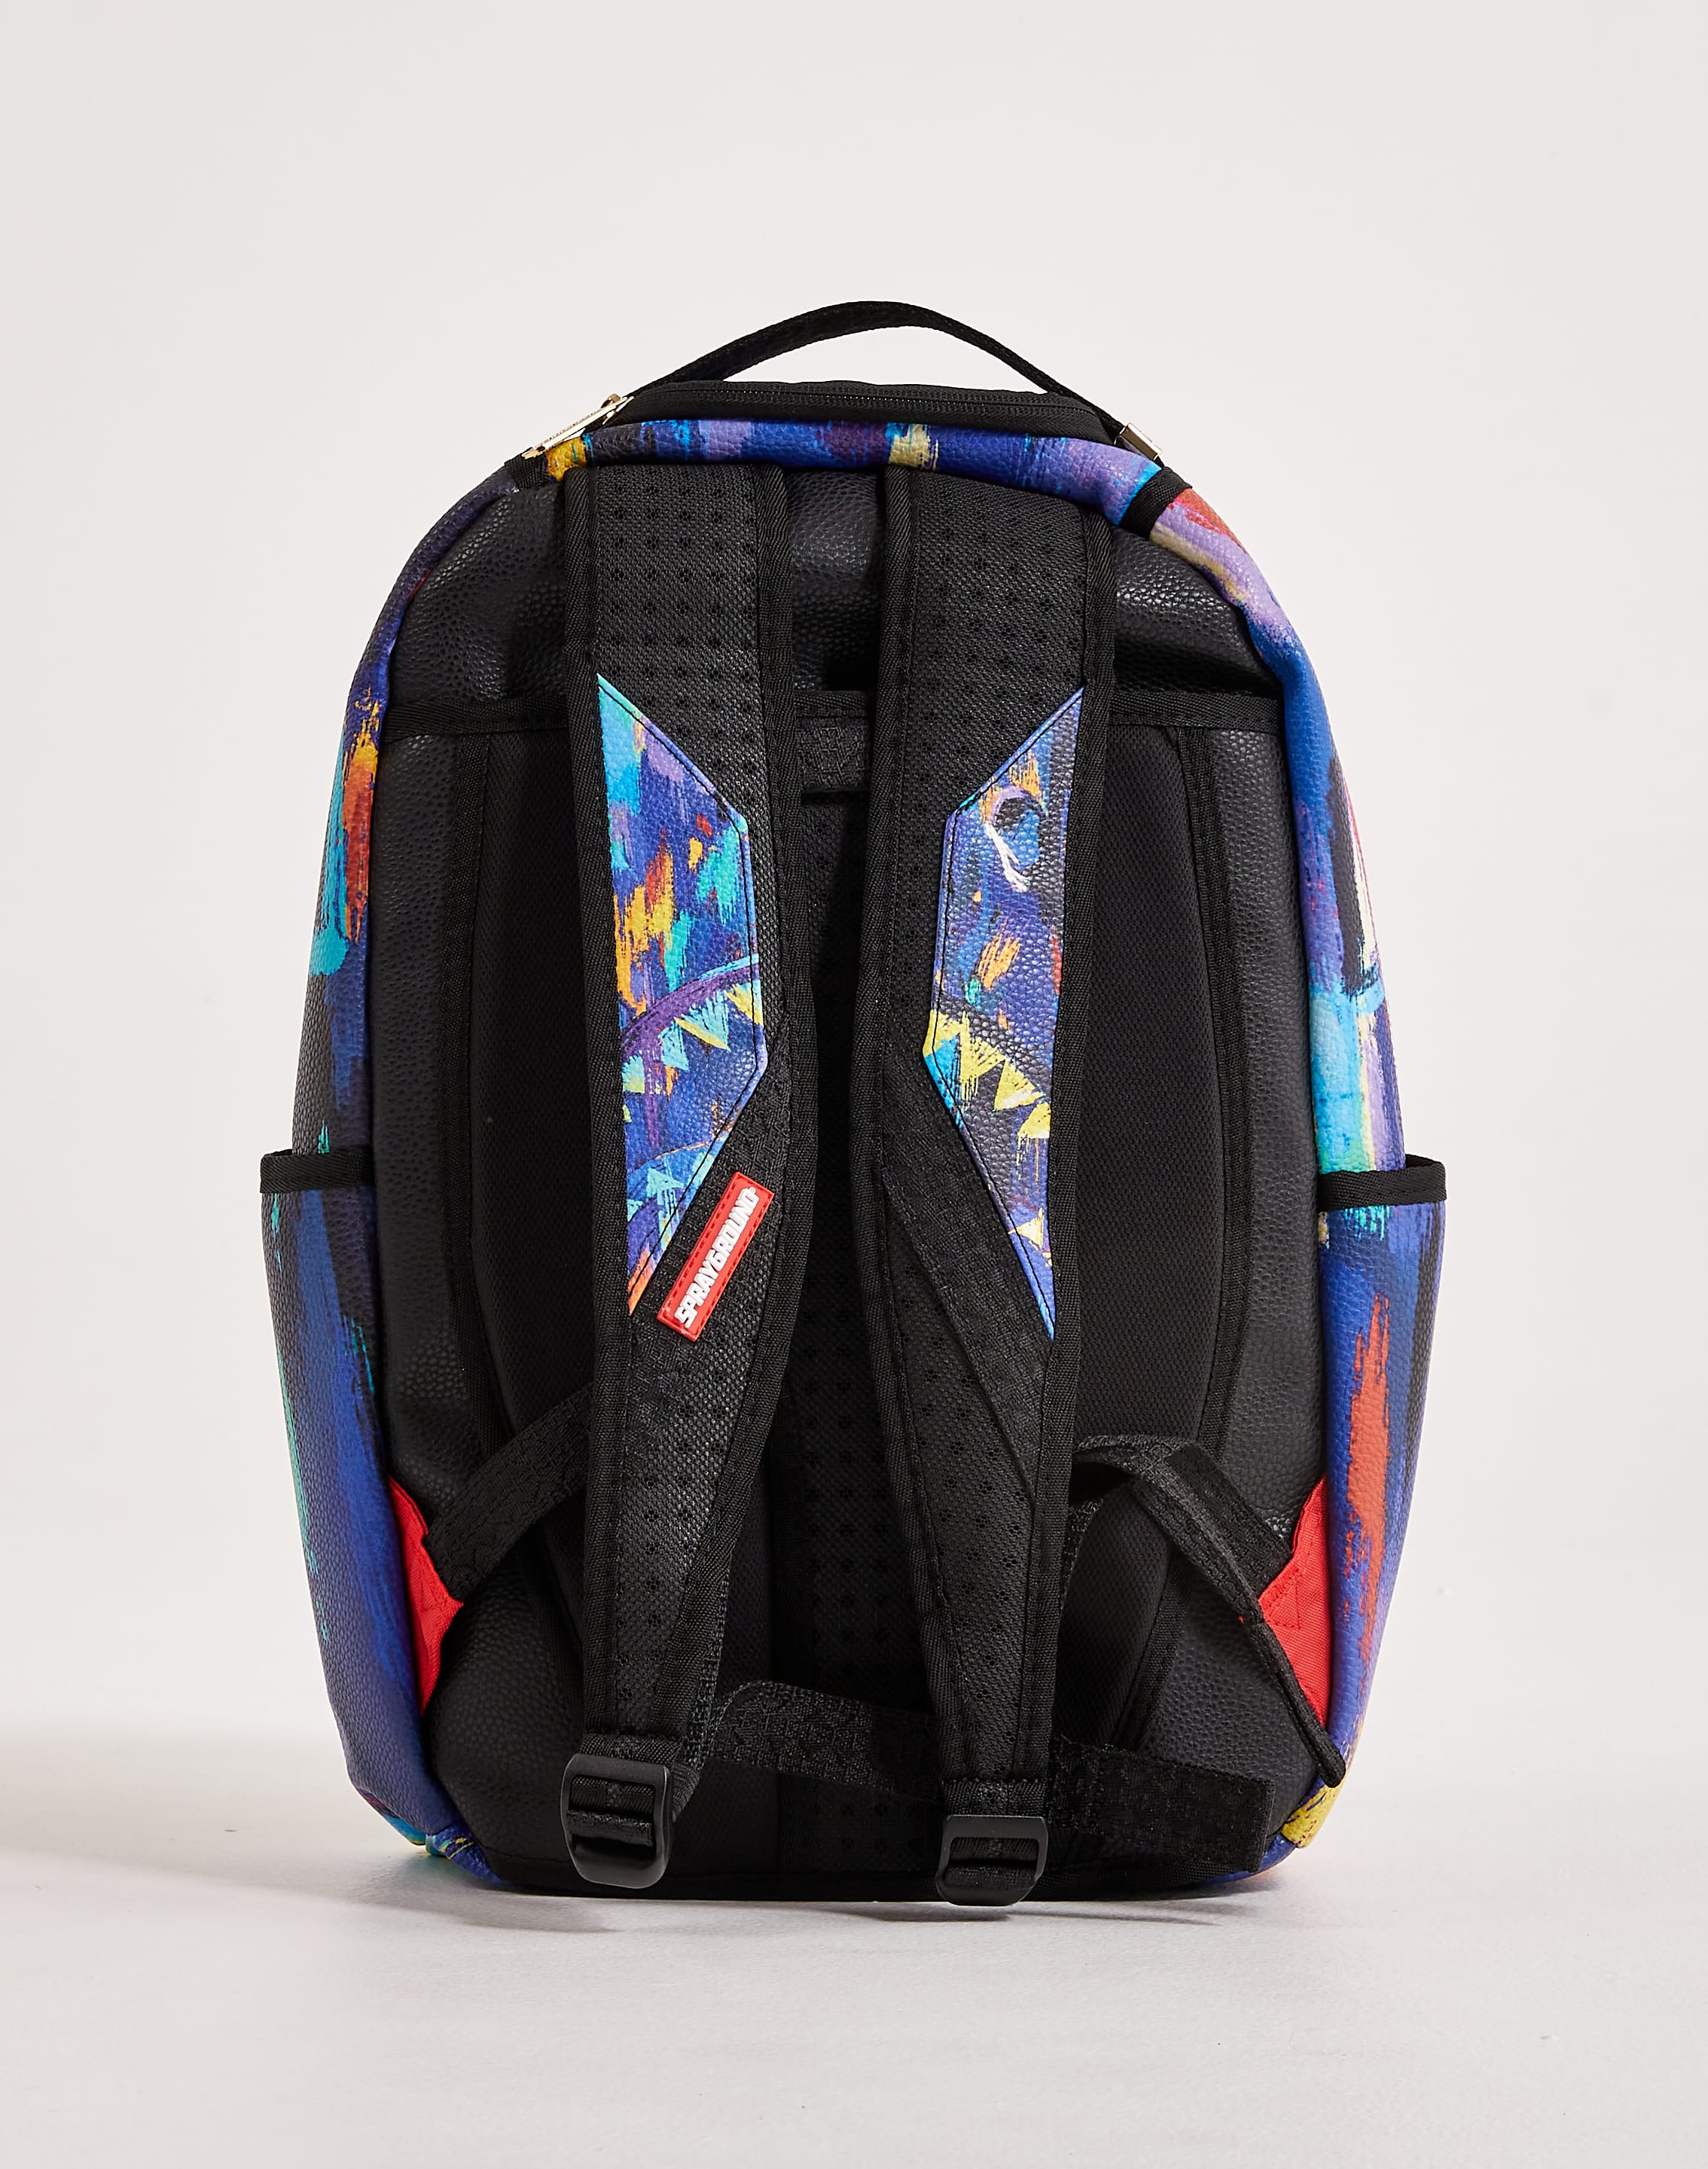 BEST LUGGAGE SETS  Sprayground Designer Bags, Backpacks & More